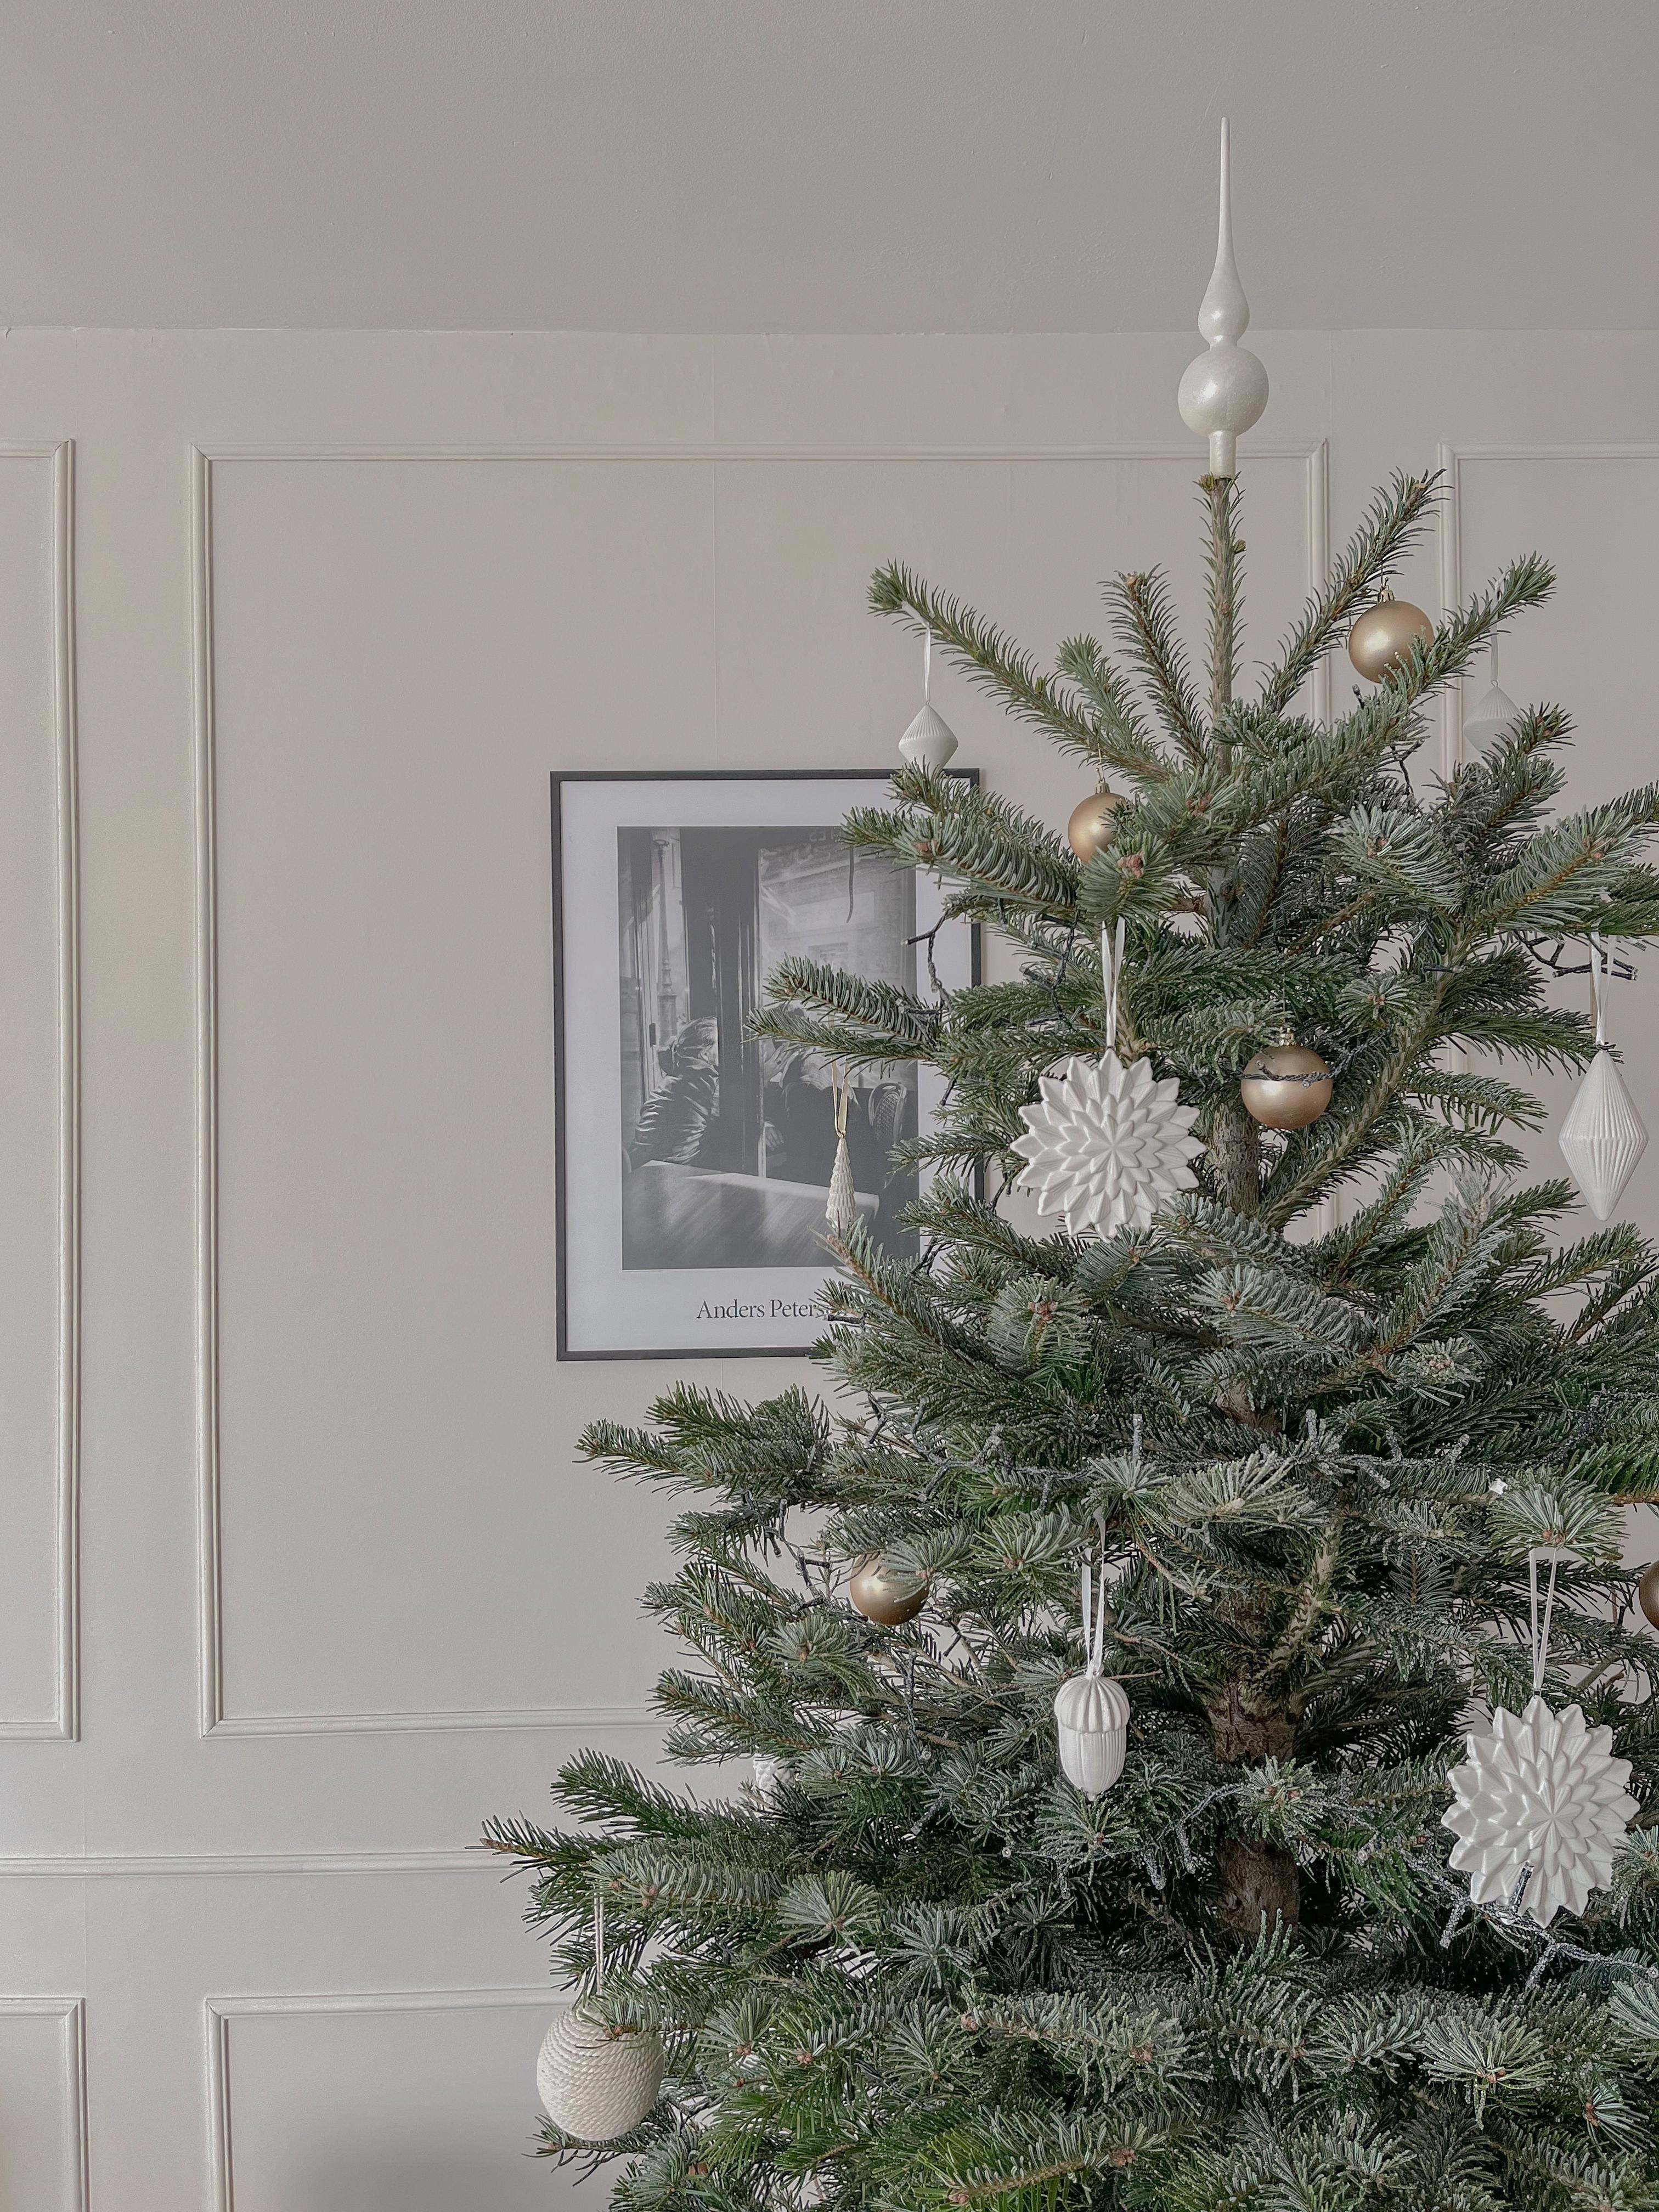 Wir haben uns dieses Jahr für #baumschmuck in #weiß und #gold entschieden. #weihnachten #weihnachtsbaum #deko #tanne